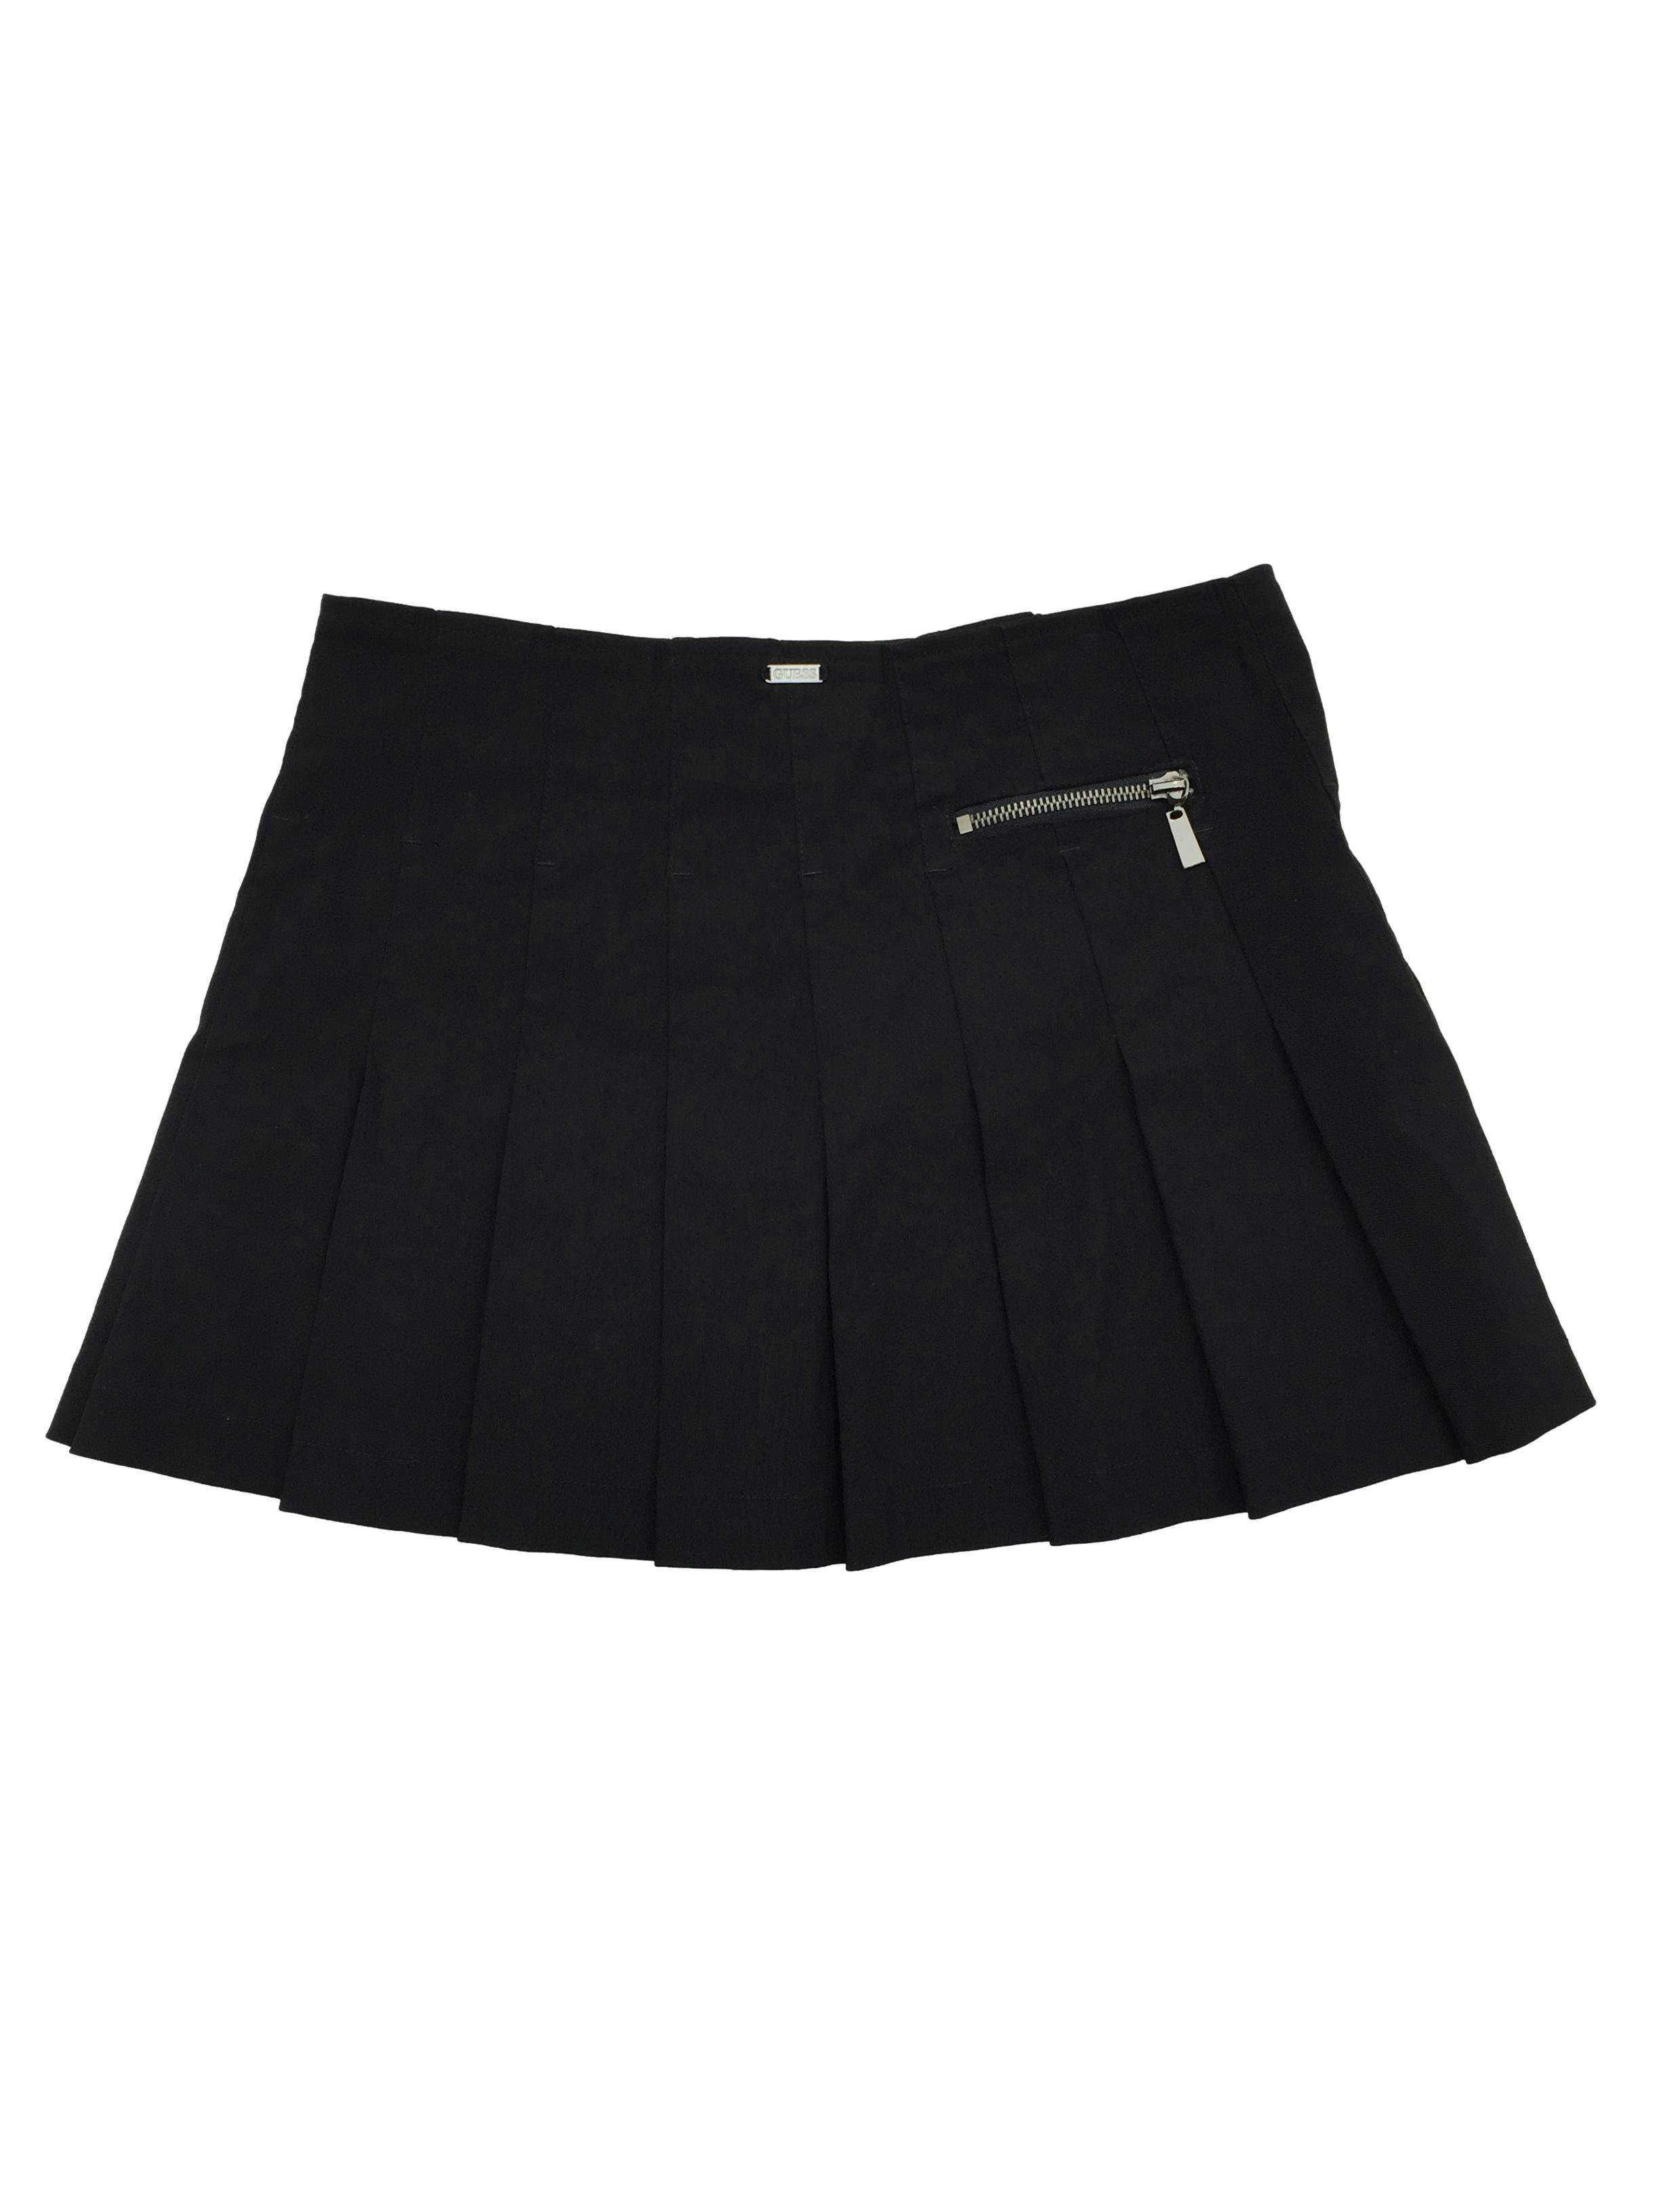 Falda negra tableada, con cierre delantero y bolsillo, tipo drill stretch. Cintura: 72cm, Largo: 32cm